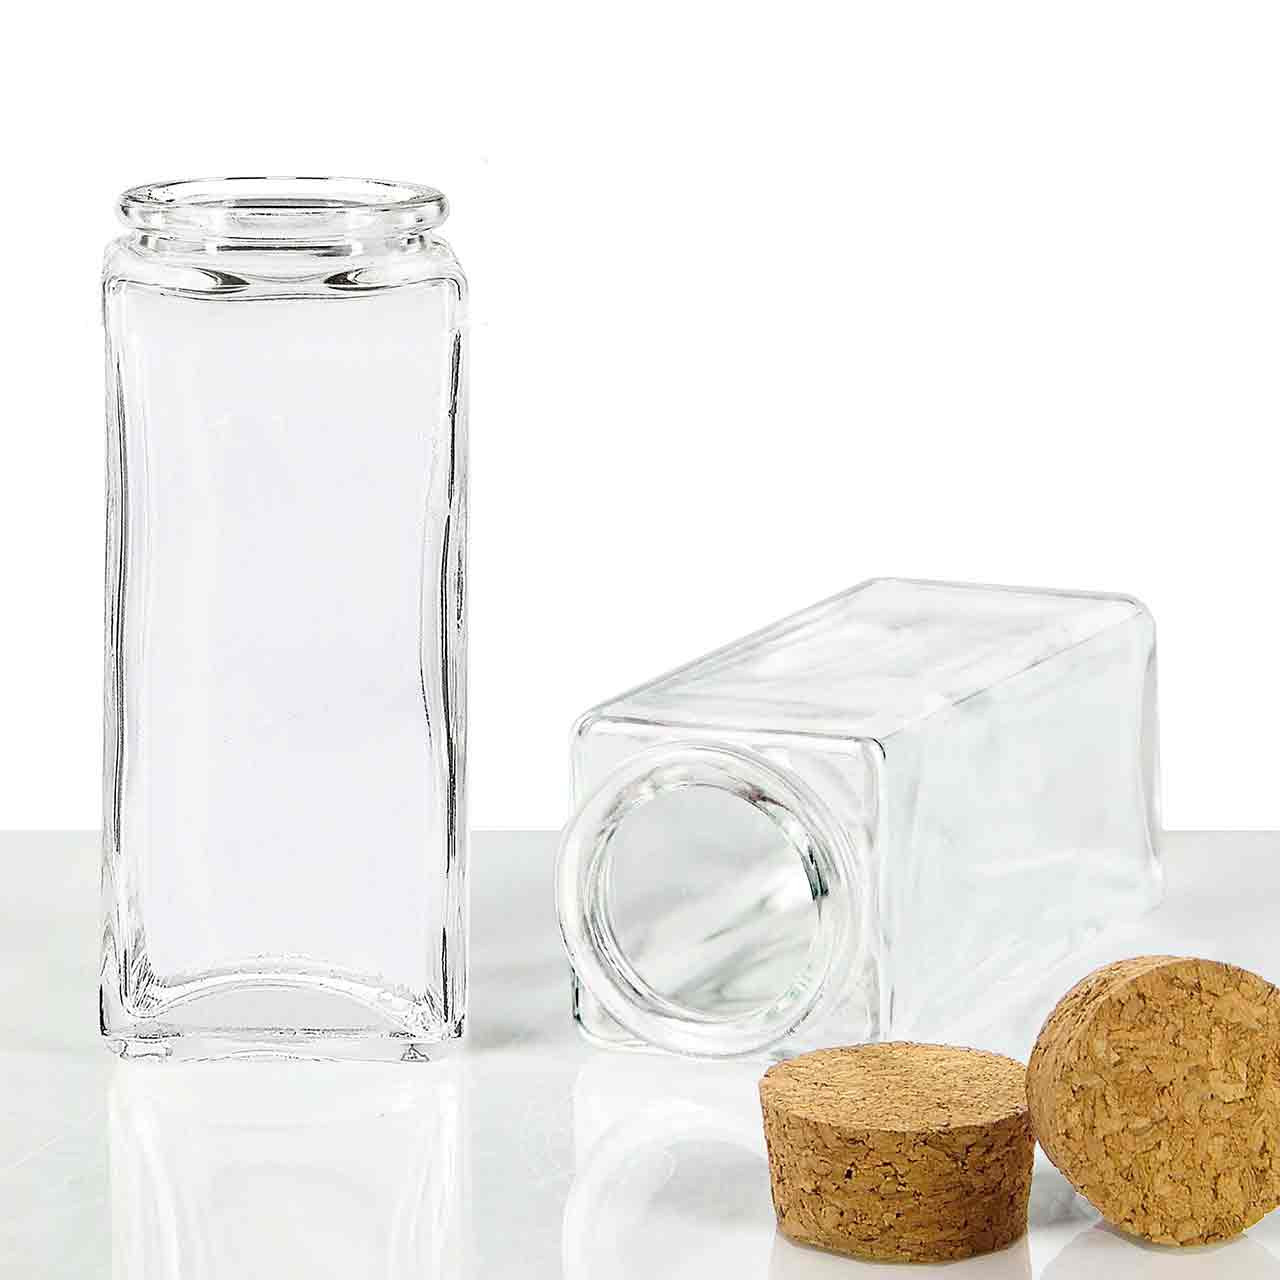 Clear Glass Spice Jar 3.4 oz